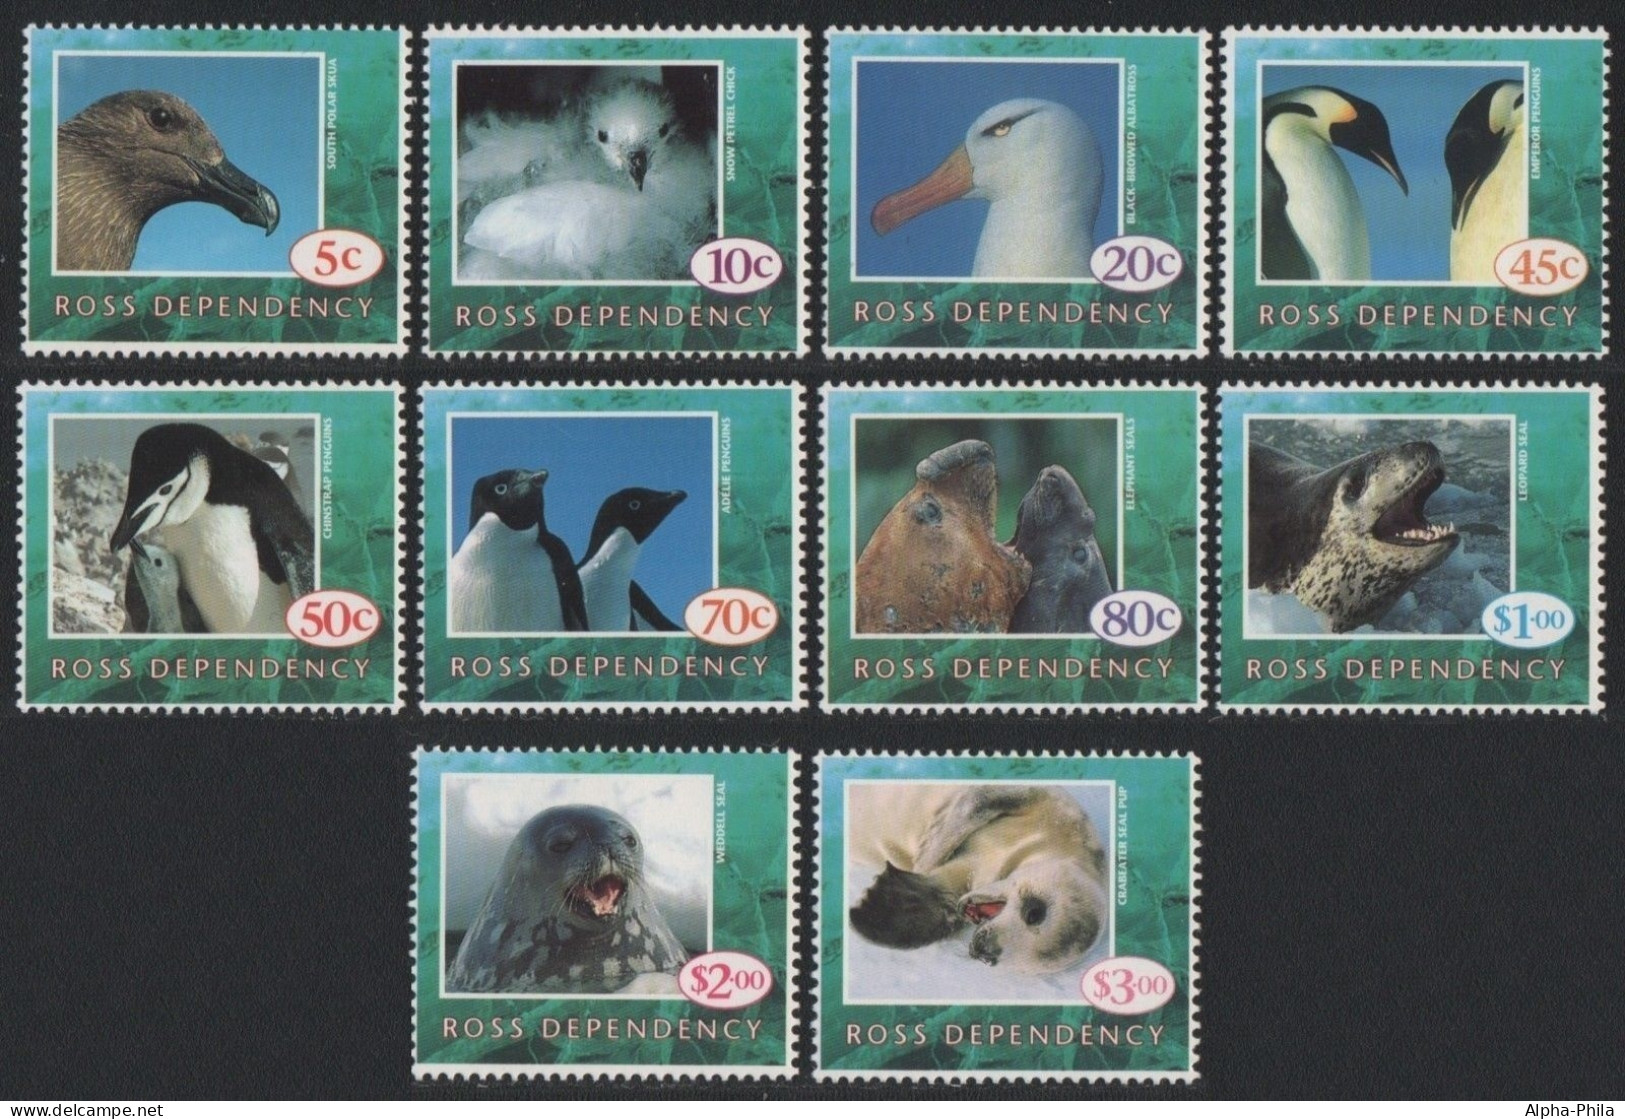 Ross-Gebiet 1994 - Mi-Nr. 21-30 ** - MNH - Vögel, Robben / Birds, Seals - Ongebruikt